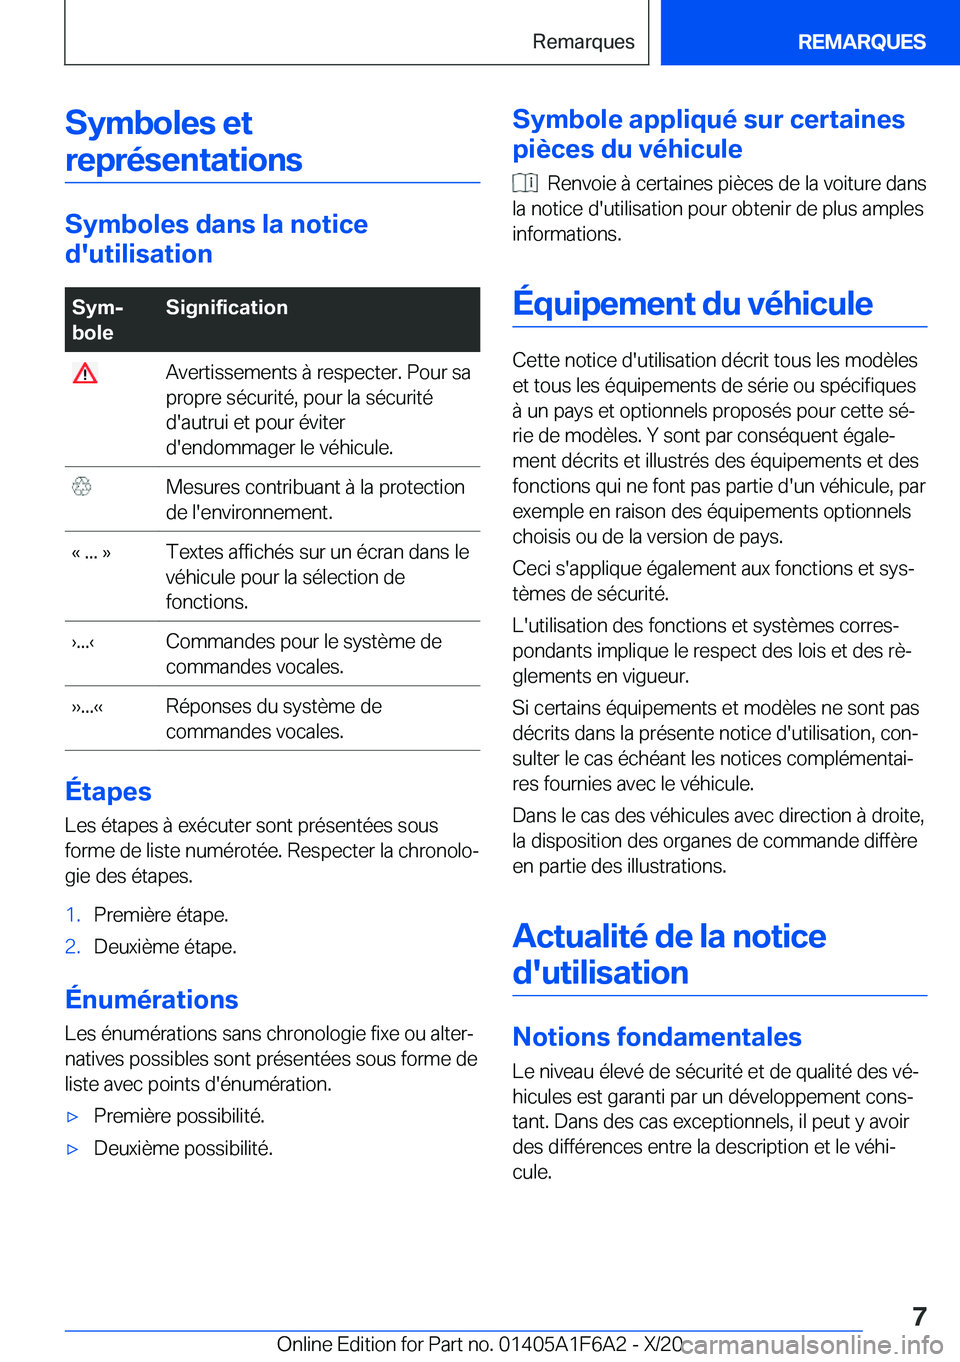 BMW X4 2021  Notices Demploi (in French) �S�y�m�b�o�l�e�s��e�t�r�e�p�r�é�s�e�n�t�a�t�i�o�n�s
�S�y�m�b�o�l�e�s��d�a�n�s��l�a��n�o�t�i�c�e
�d�'�u�t�i�l�i�s�a�t�i�o�n
�S�y�mj
�b�o�l�e�S�i�g�n�i�f�i�c�a�t�i�o�n��A�v�e�r�t�i�s�s�e�m�e�